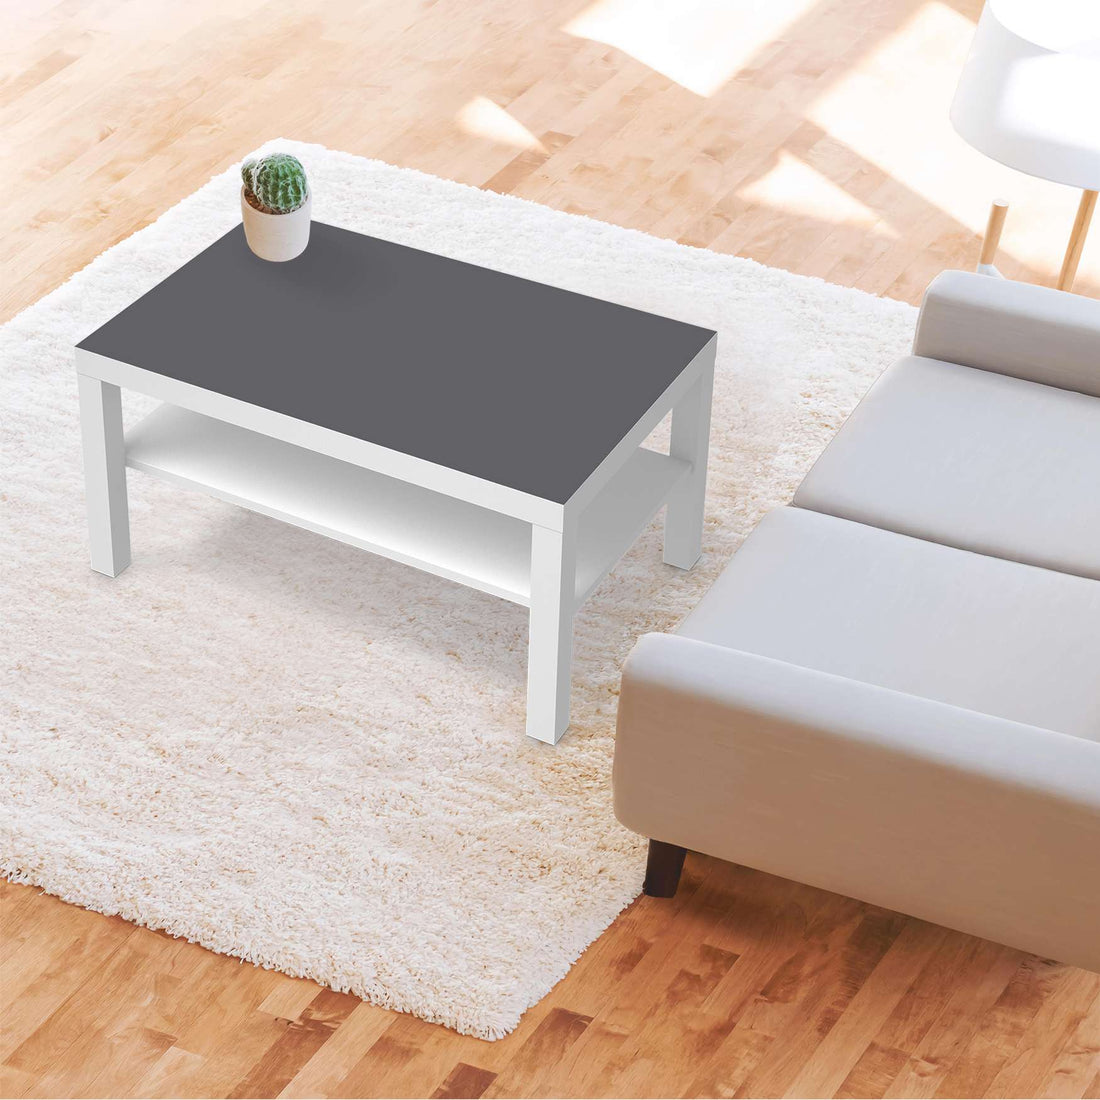 Möbelfolie Grau Light - IKEA Lack Tisch 90x55 cm - Wohnzimmer